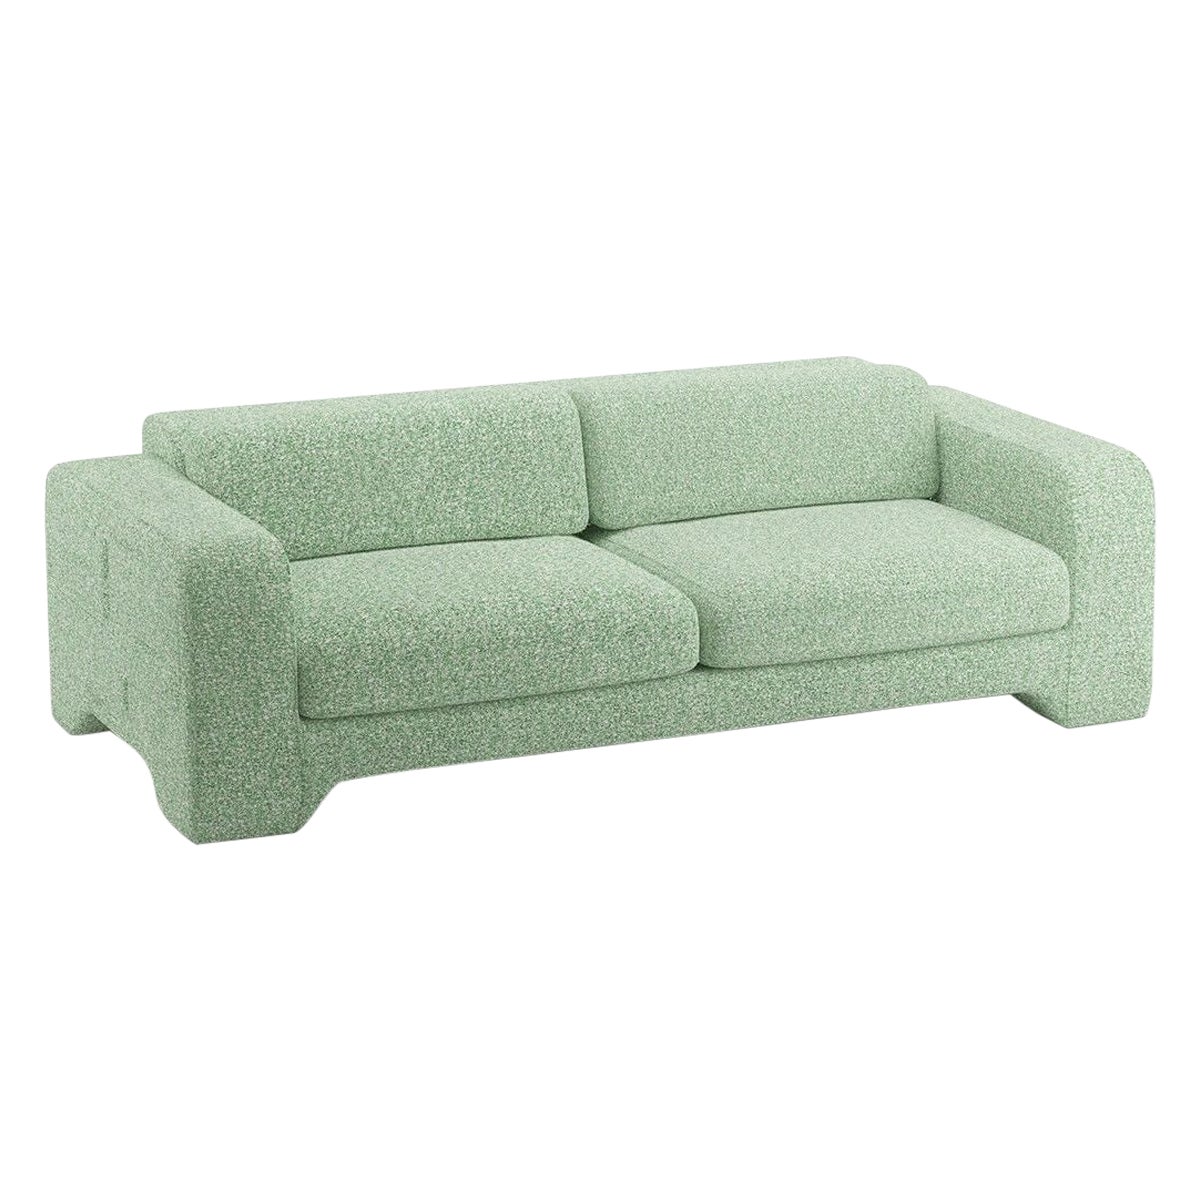 Popus Editions Giovanna 3 Seater Sofa in Grass Zanzi Linen Fabric For Sale